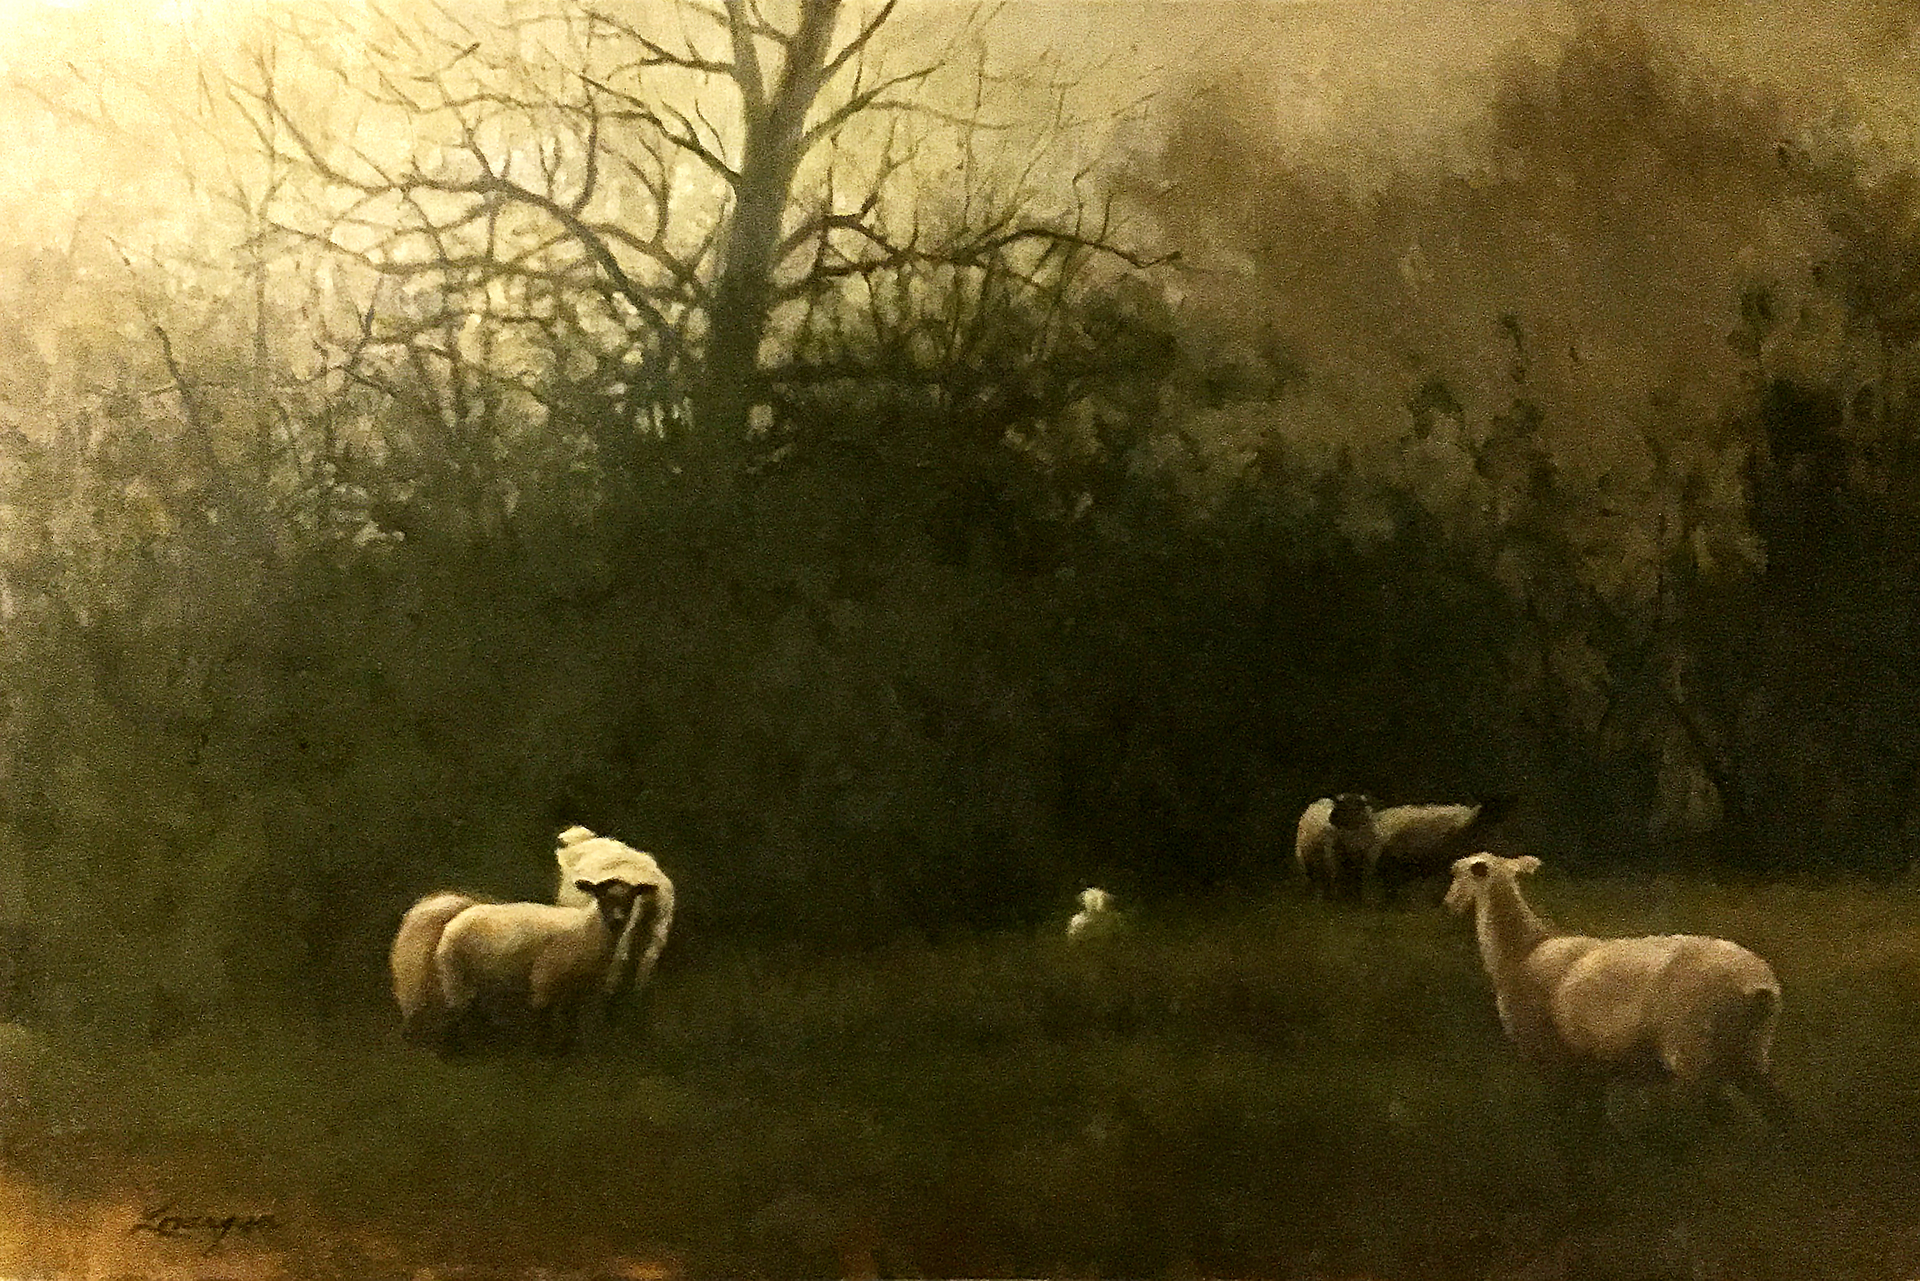 Sheep at Dusk by John Lonergan